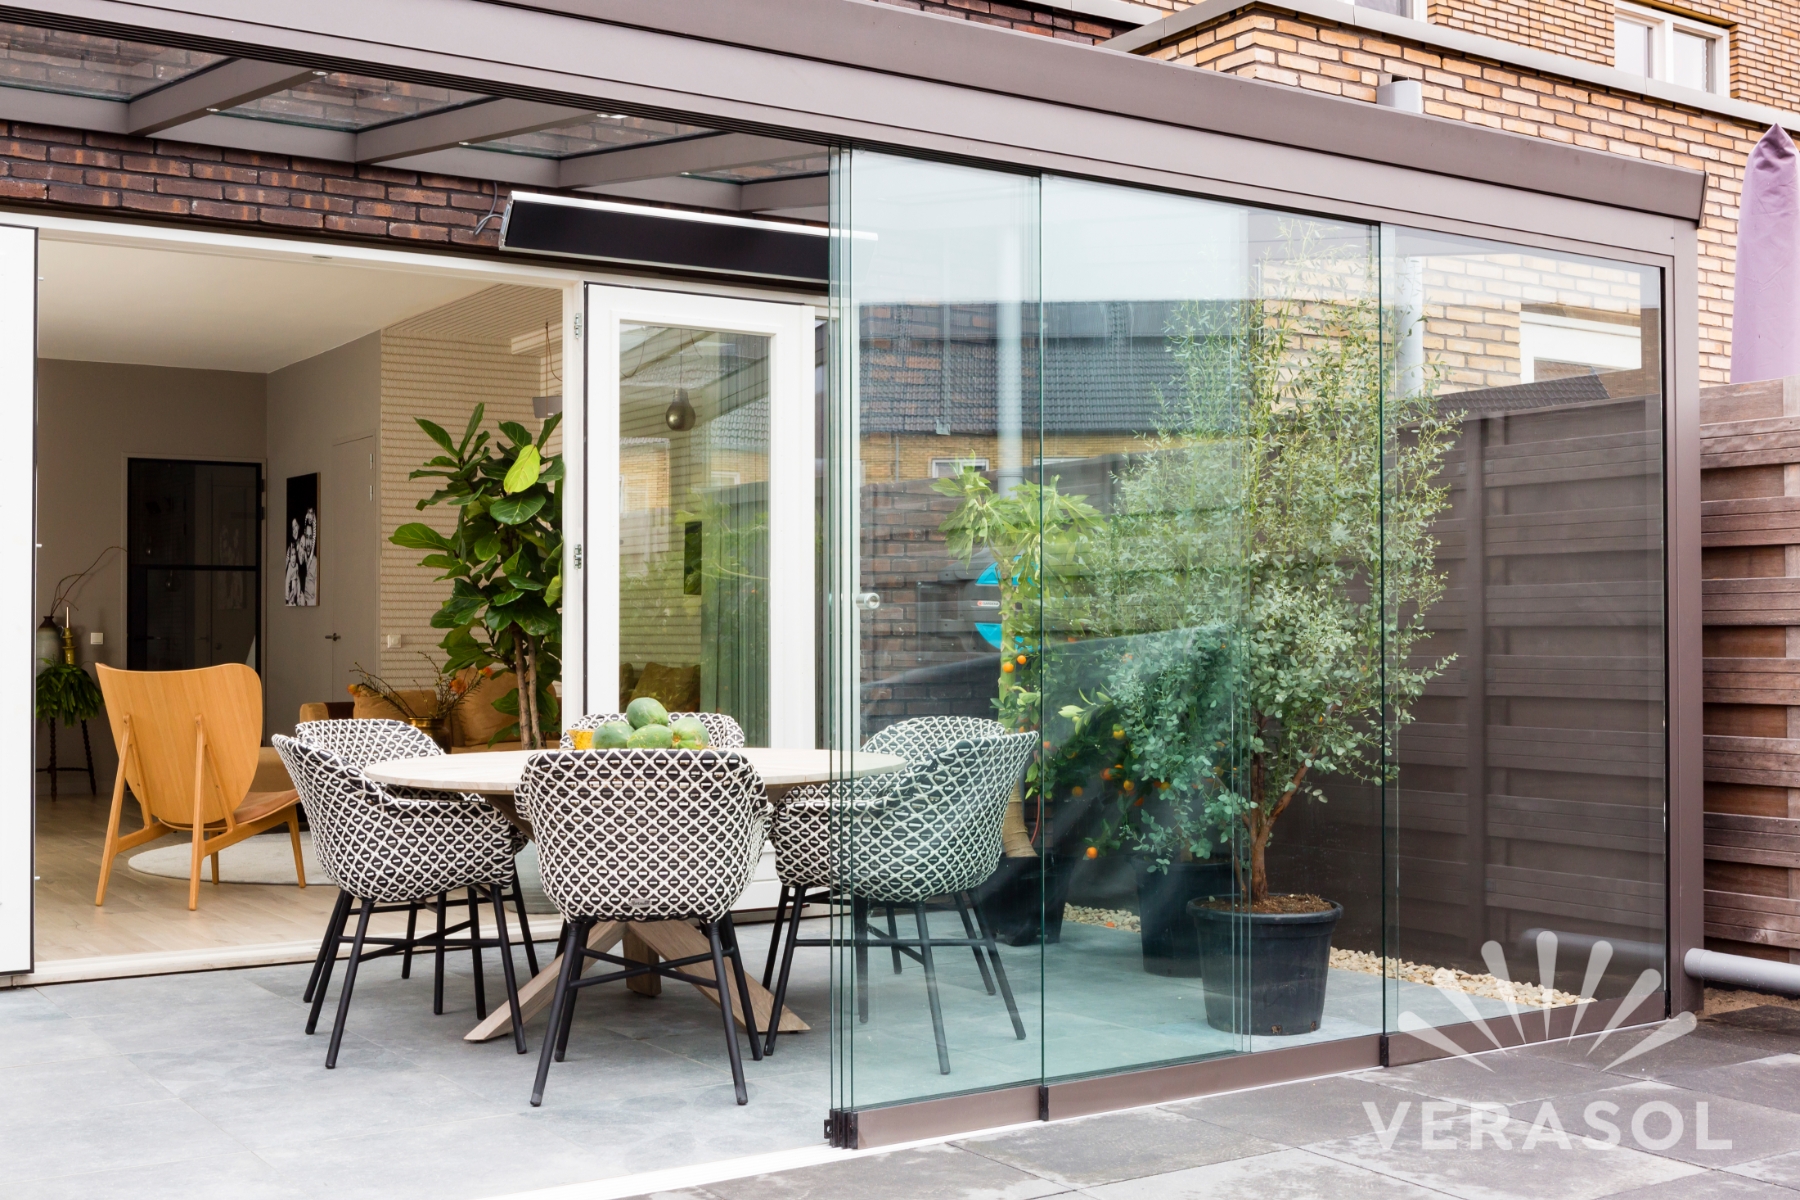 Foto : De mooiste Verasol veranda's